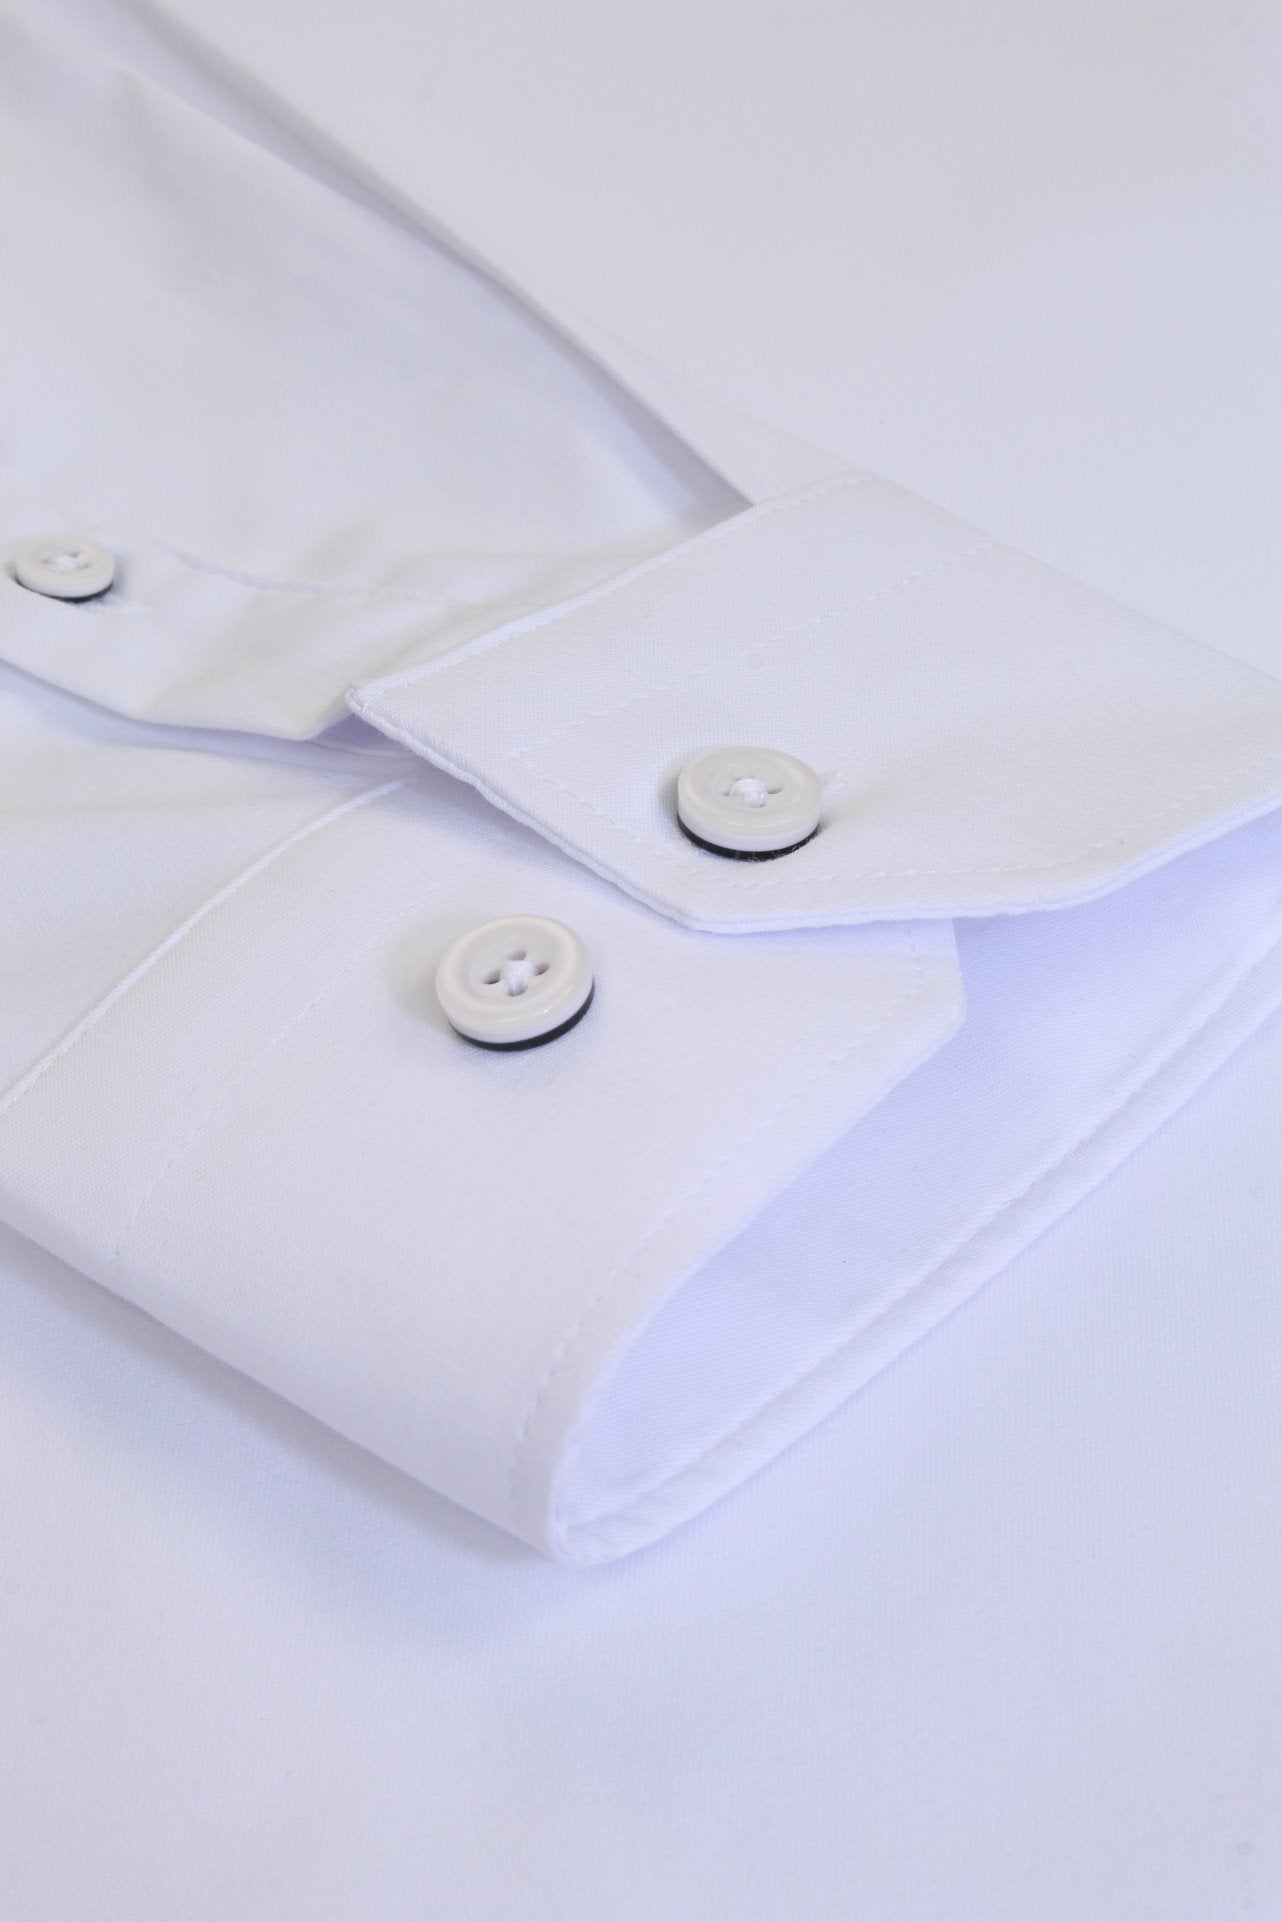 Xact Mens Long Sleeved Poplin Stretch Shirt - Slim Fit